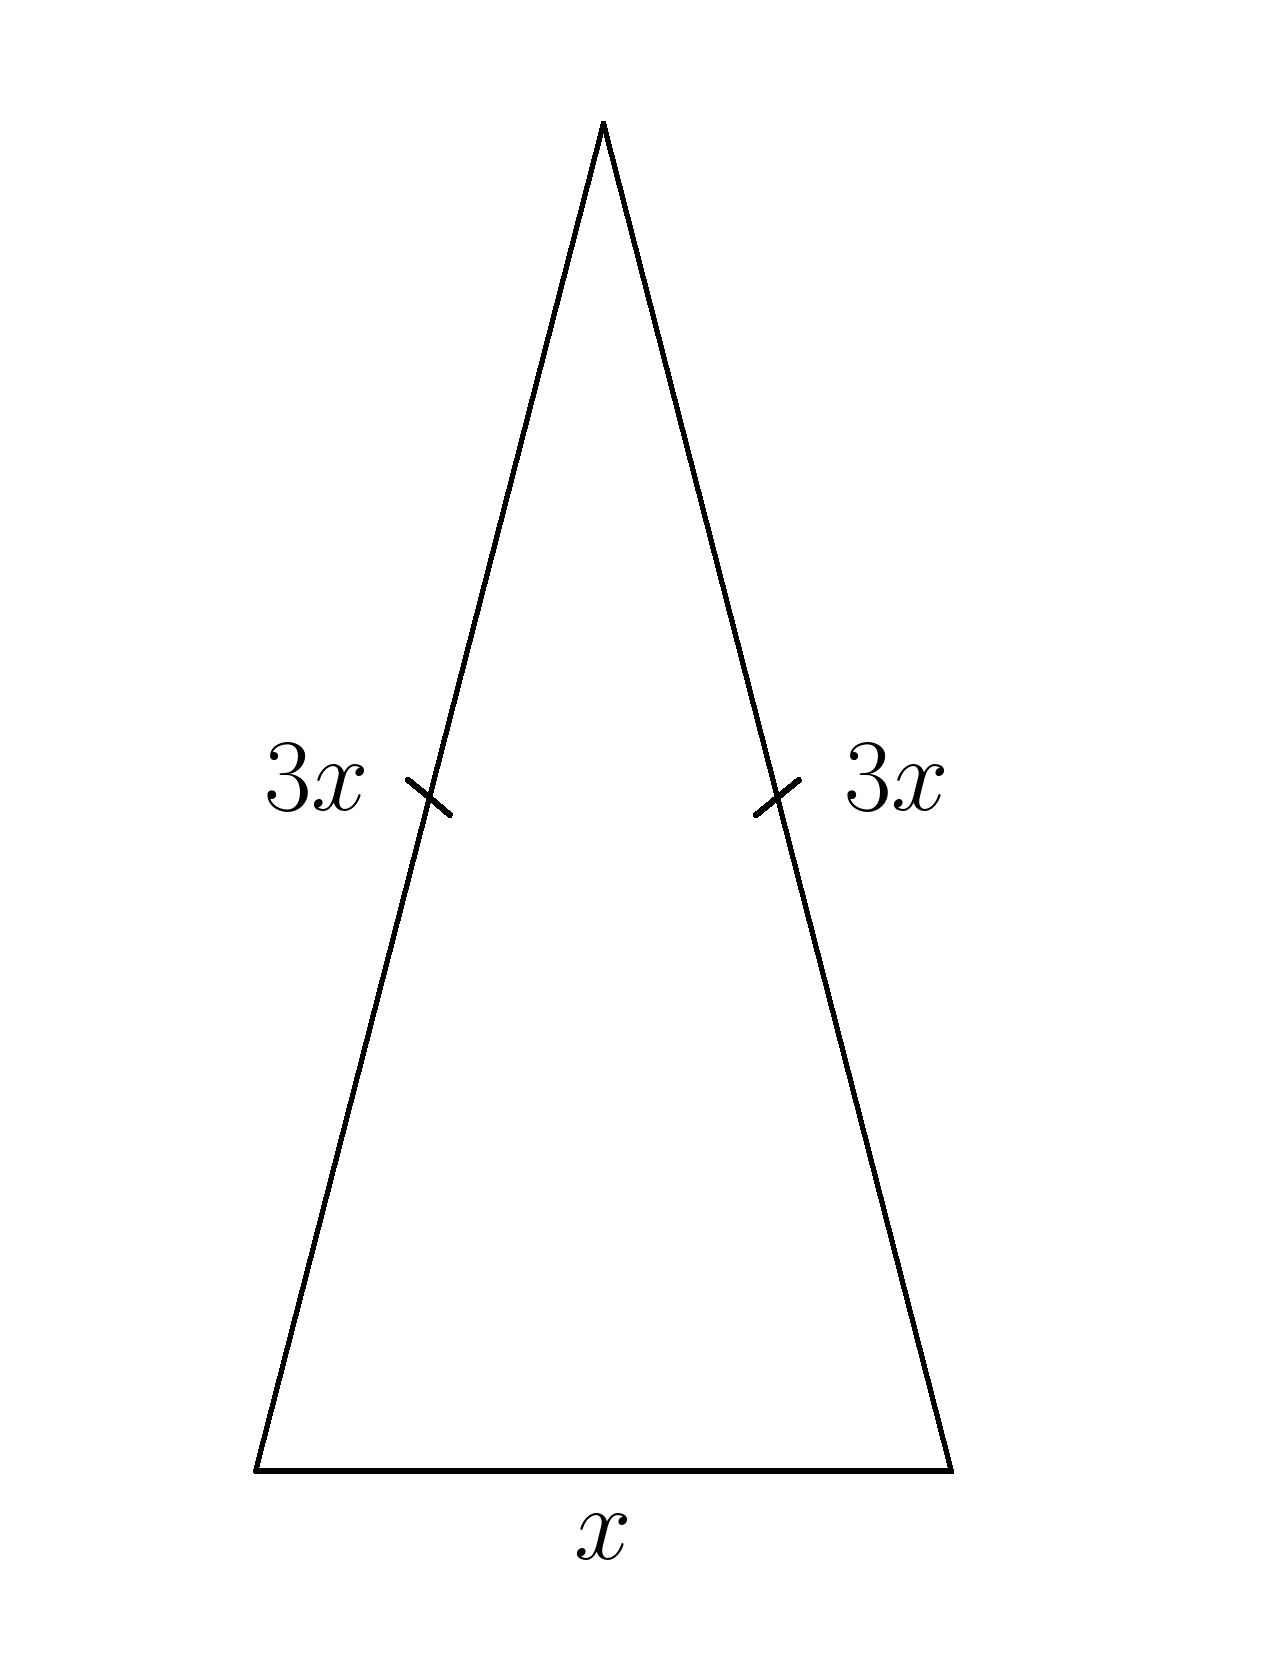 Равнобедренный треугольник